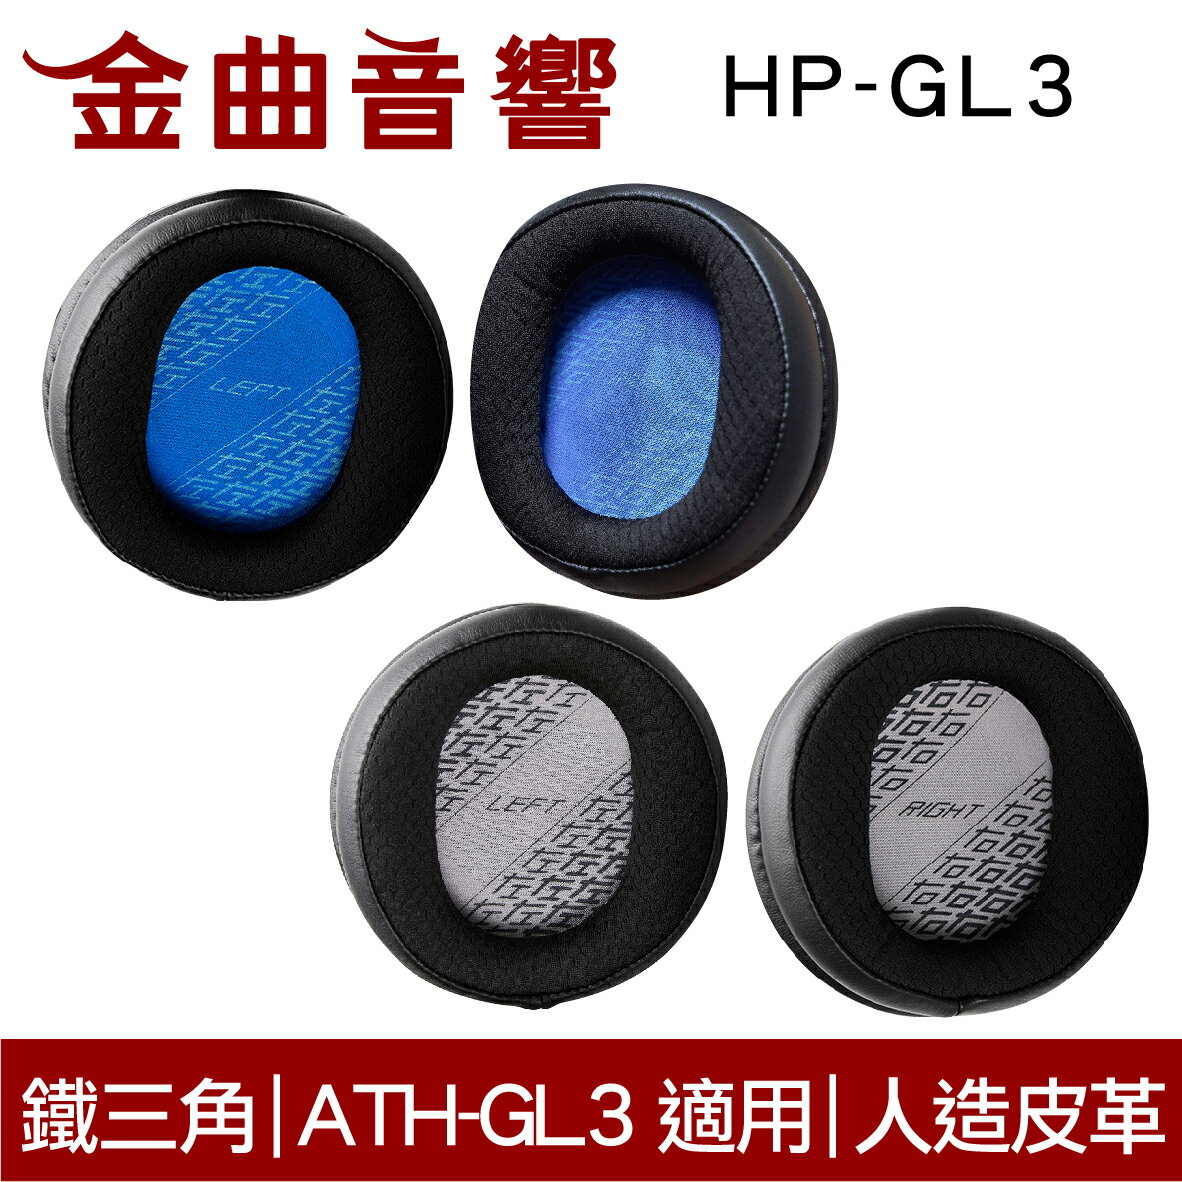 鐵三角 HP-GL3 替換耳罩 一對 ATH-GL3 適用 | 金曲音響